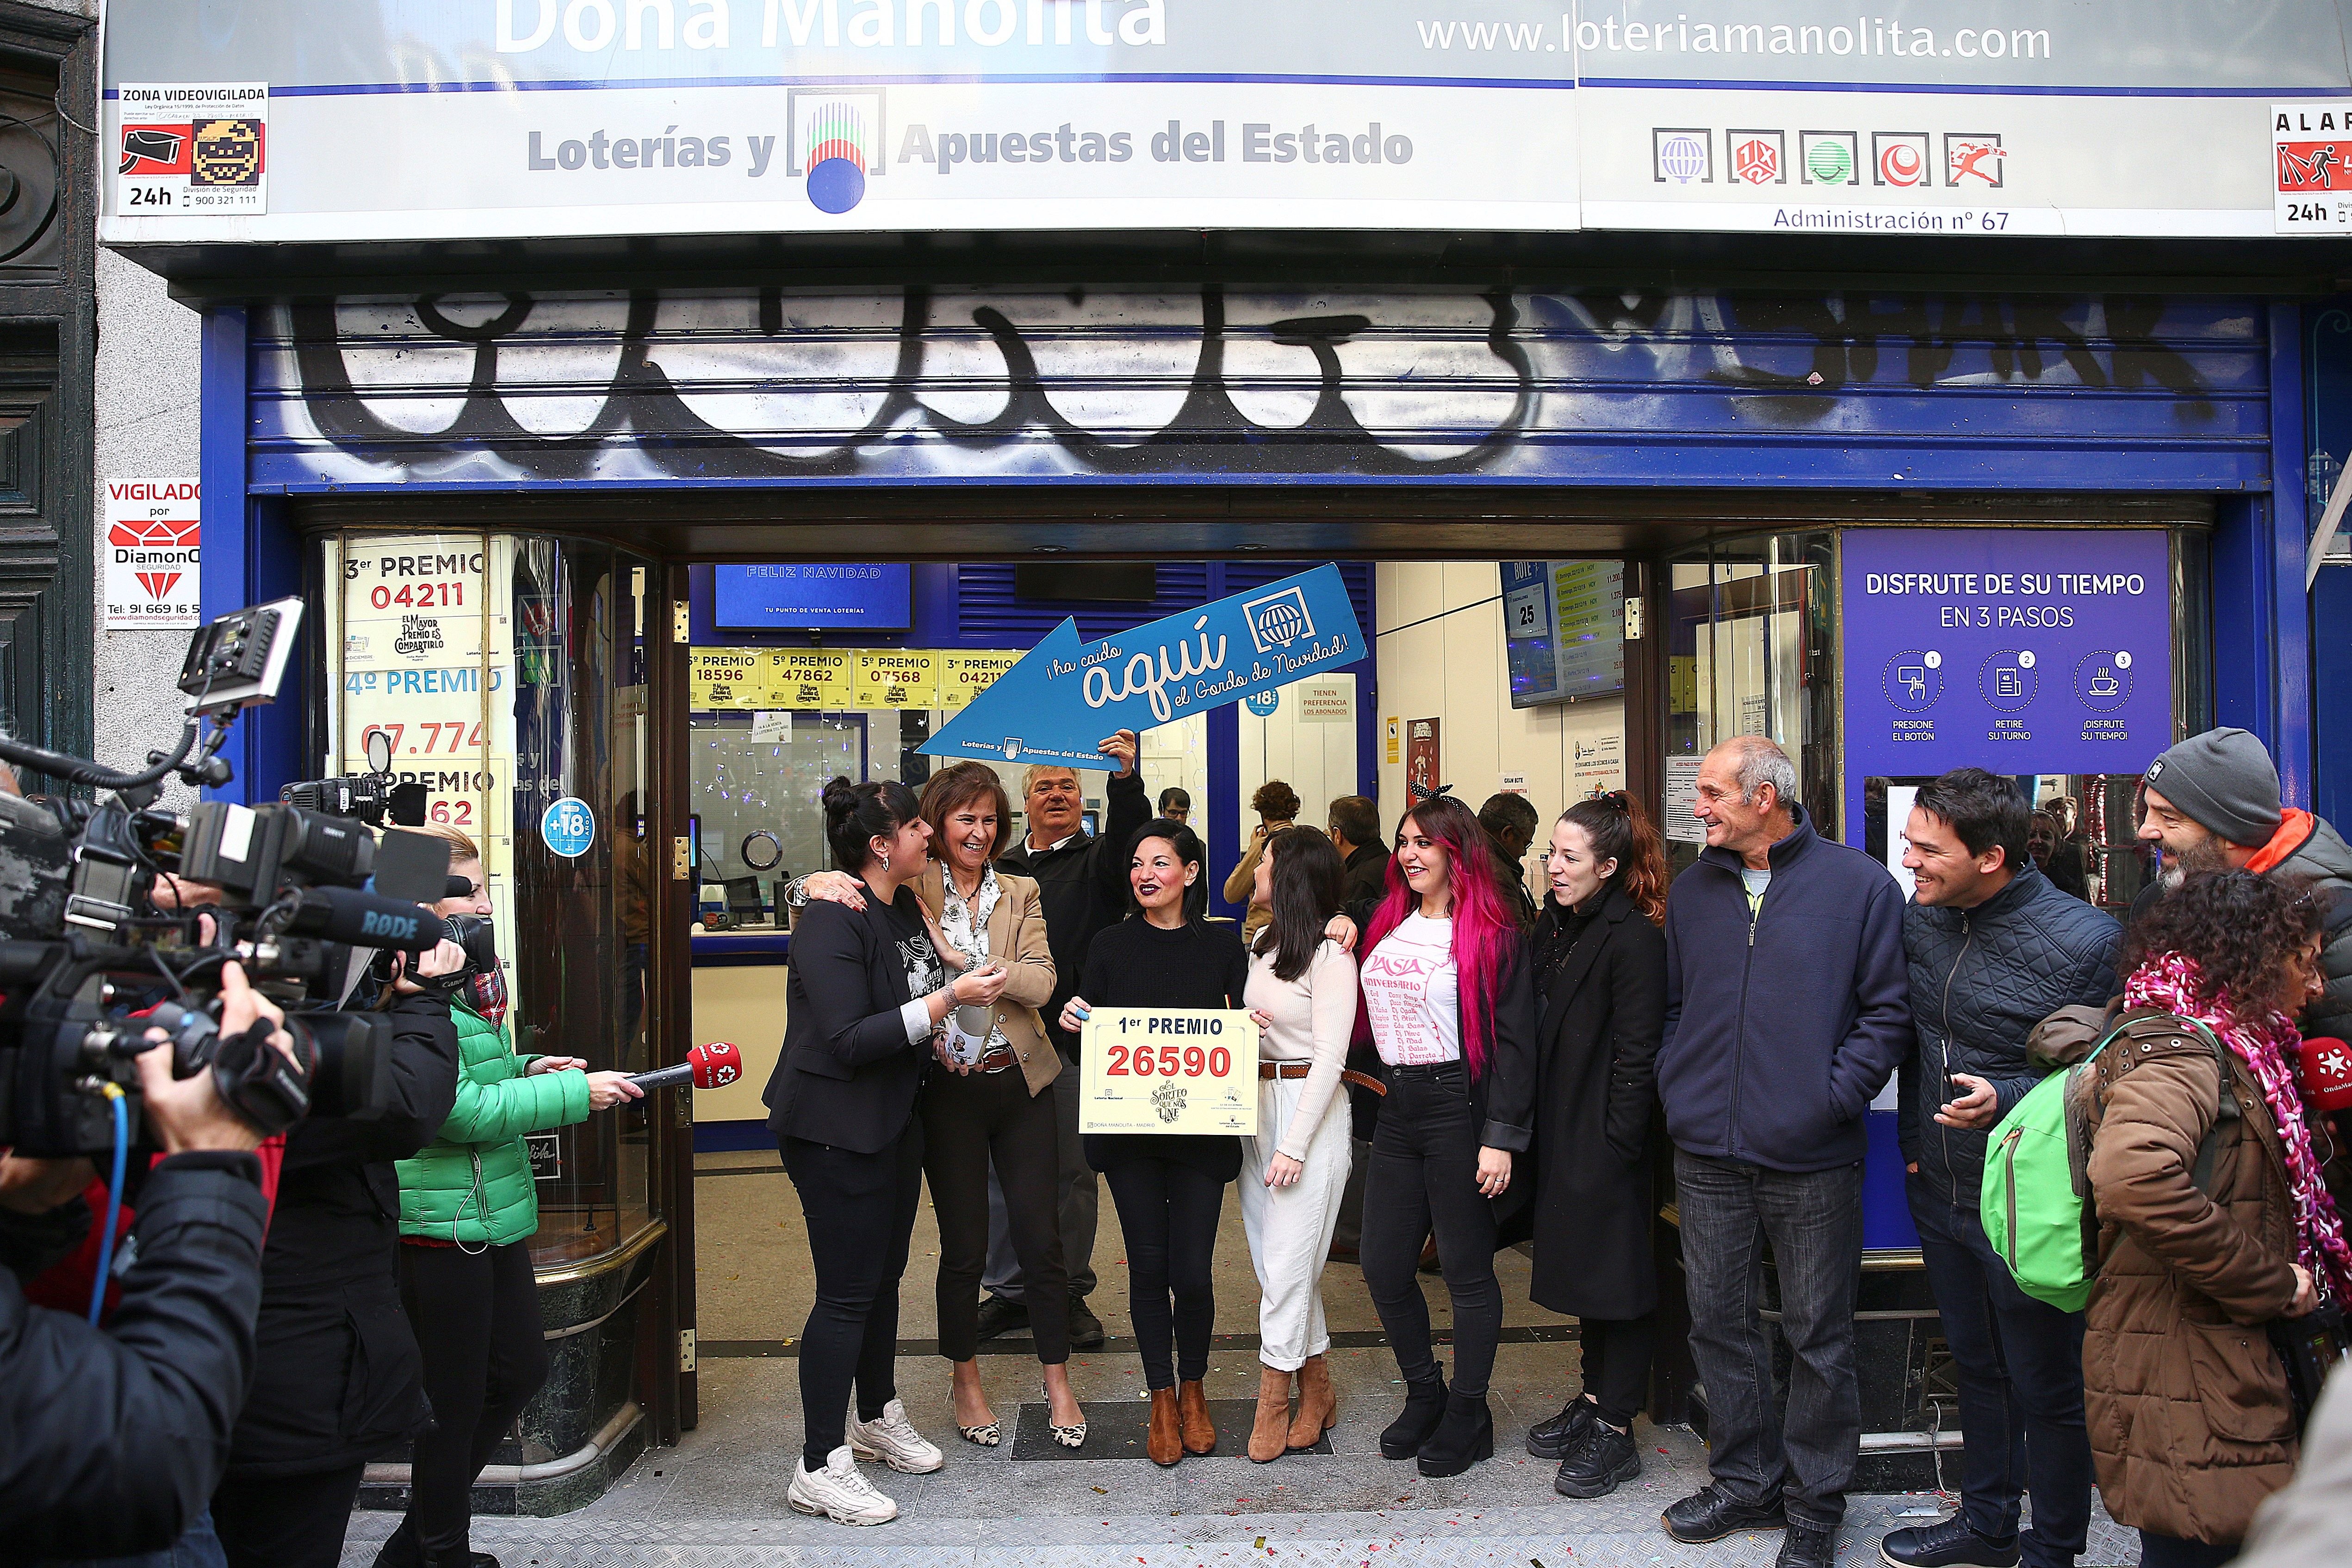 Les administracions més premiades en la Loteria de Nadal a Catalunya